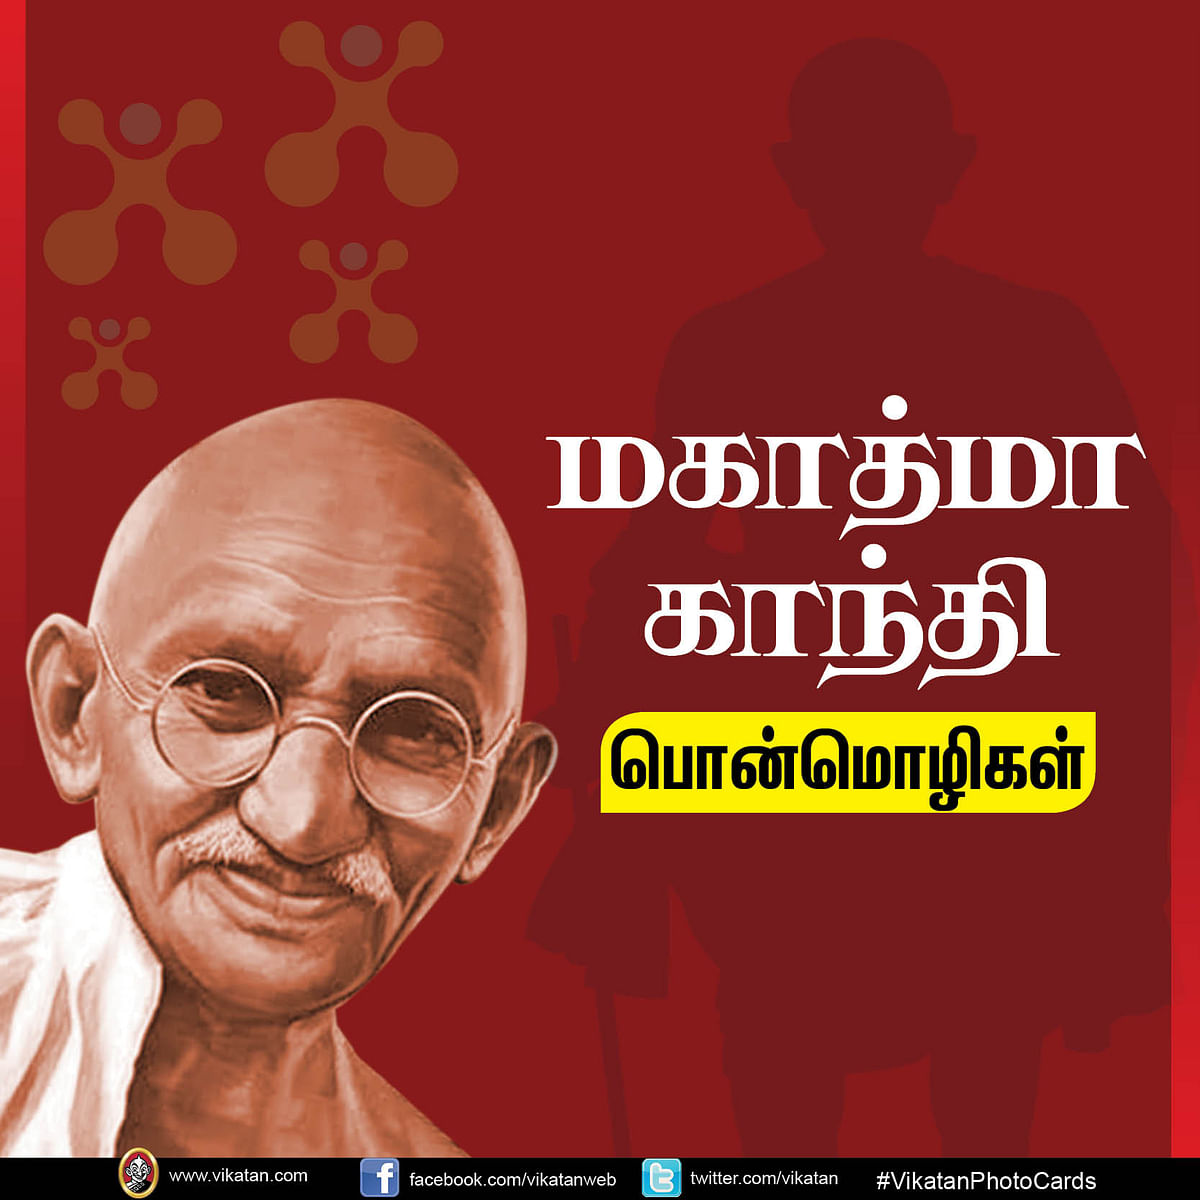 Mahatma Gandhi quotes